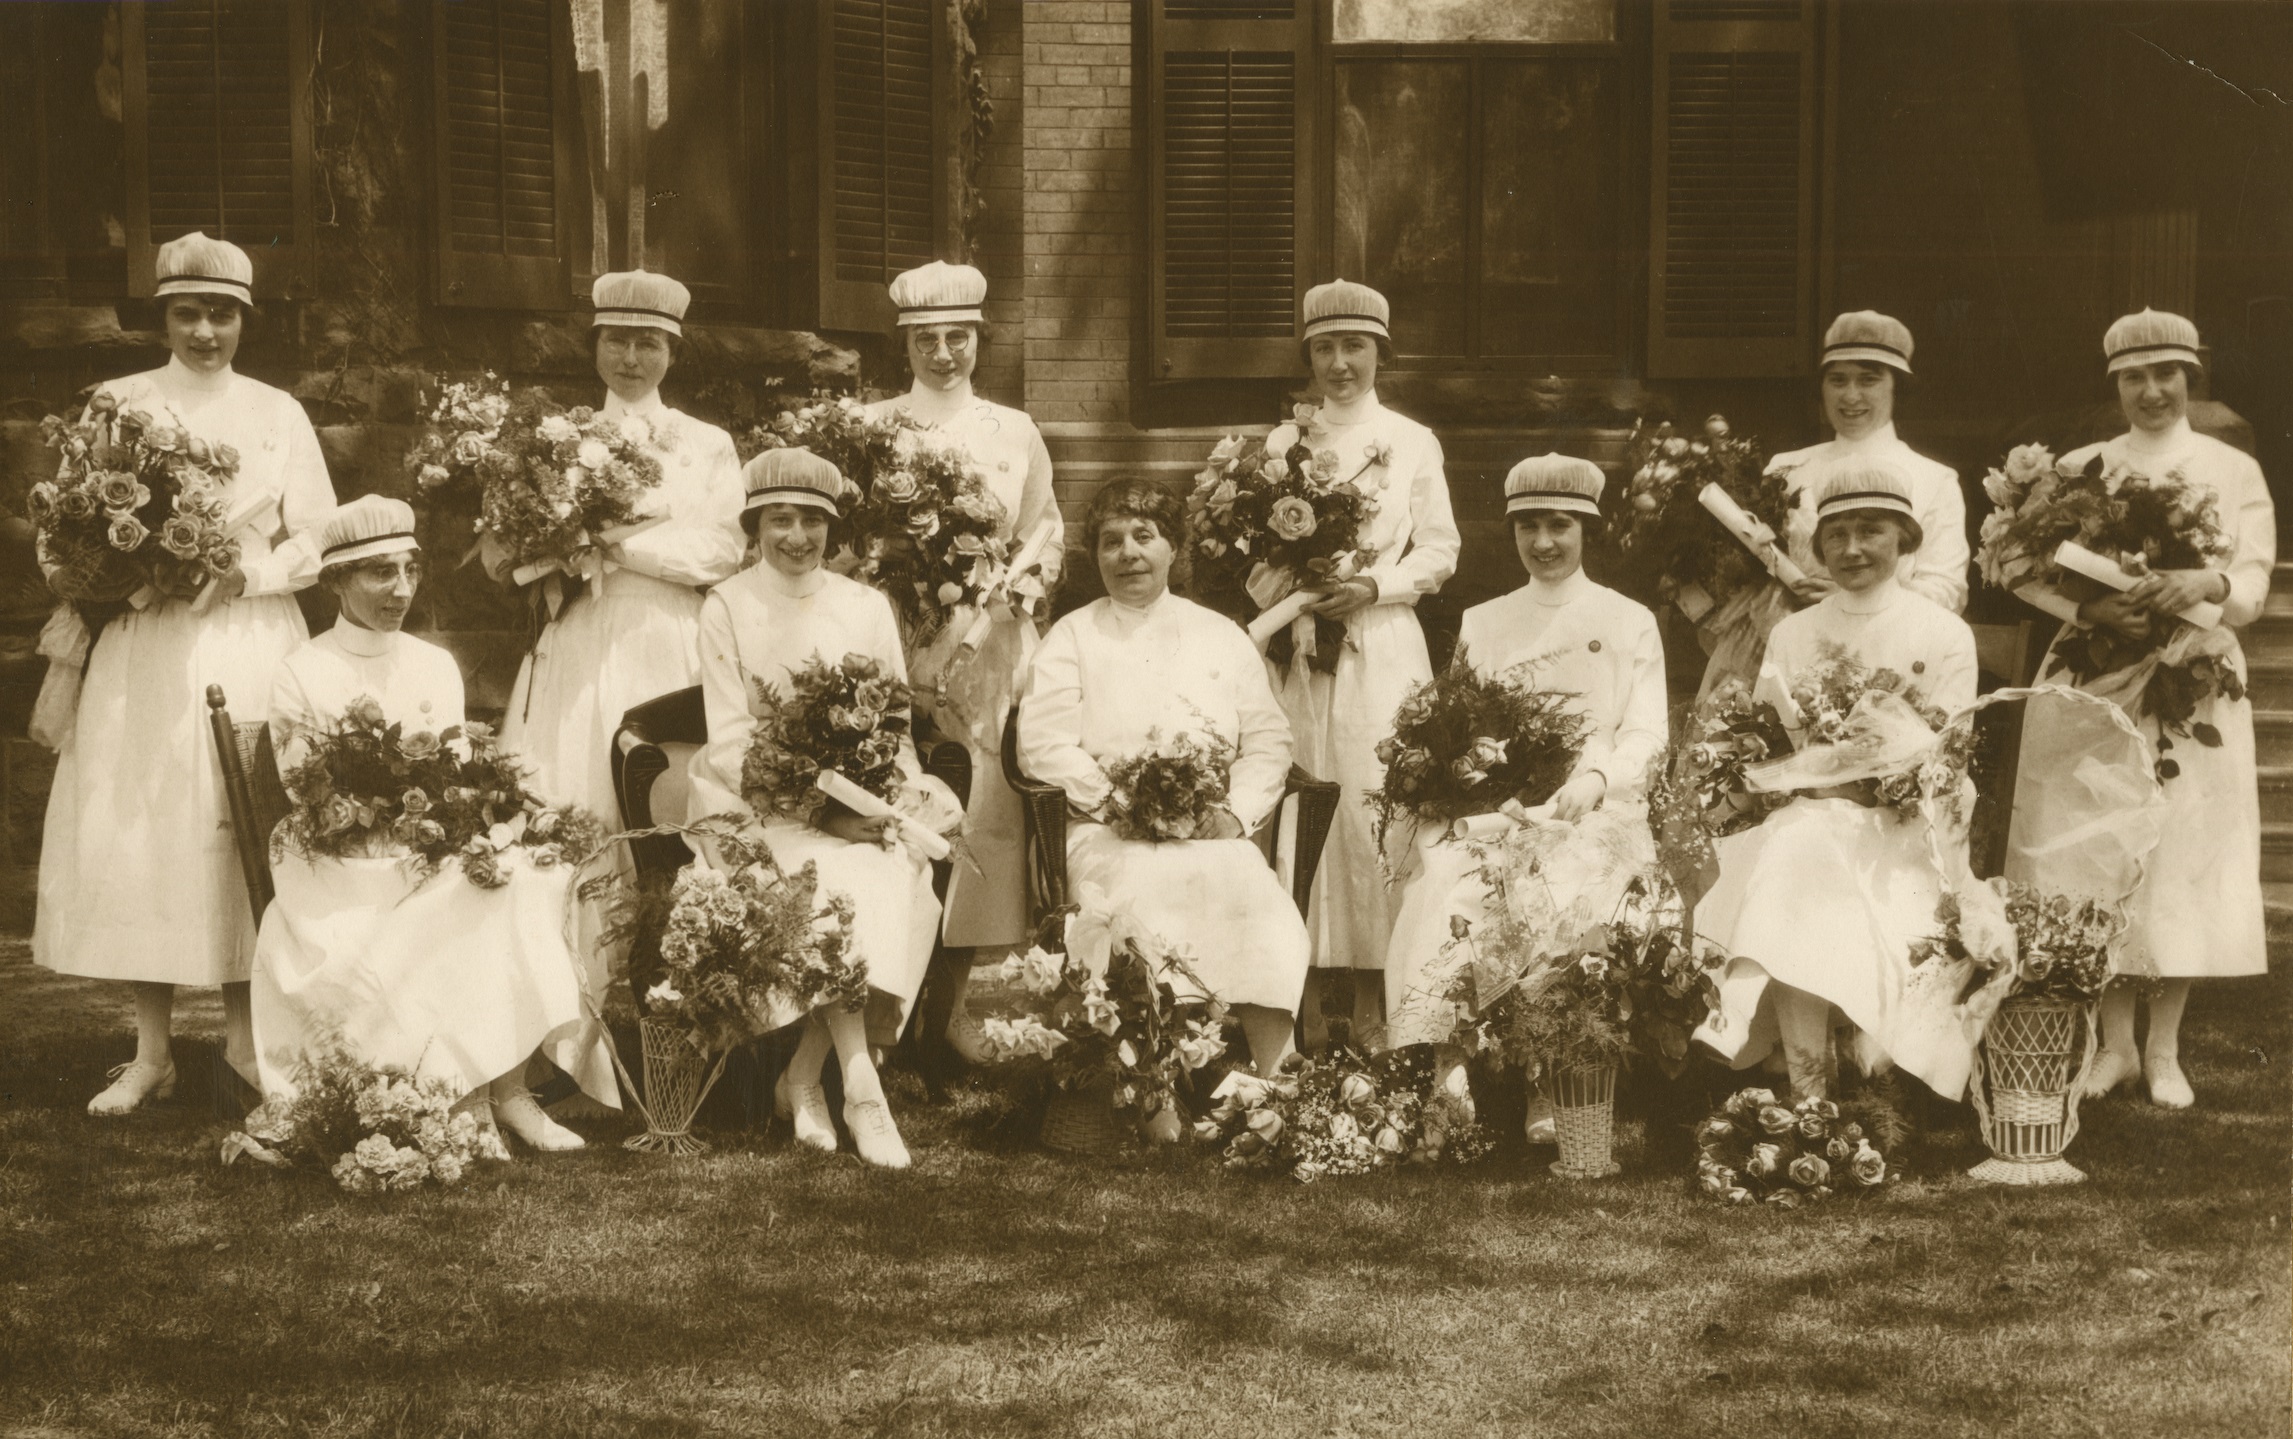 Onze femmes souriantes posent officiellement avec des bouquets de fleurs. Toutes les femmes sauf une portent une coiffe d’infirmière.